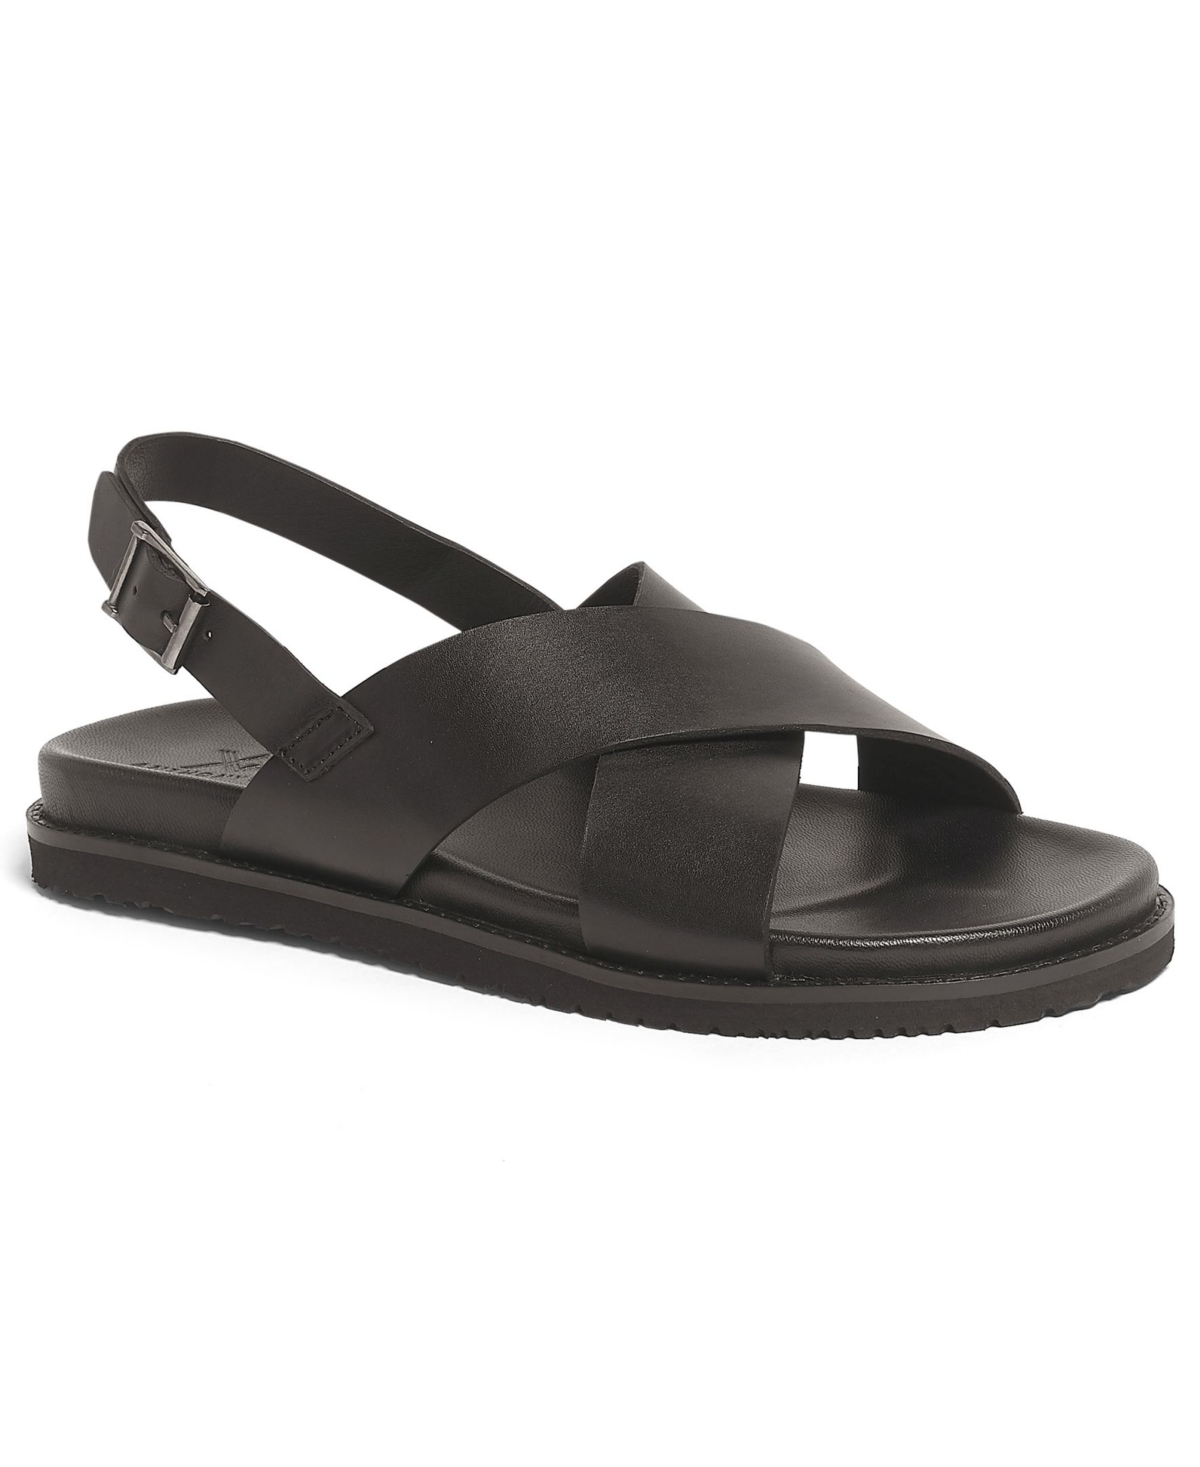 Men's Cancum Cross Strap Comfort Sandals - Brown